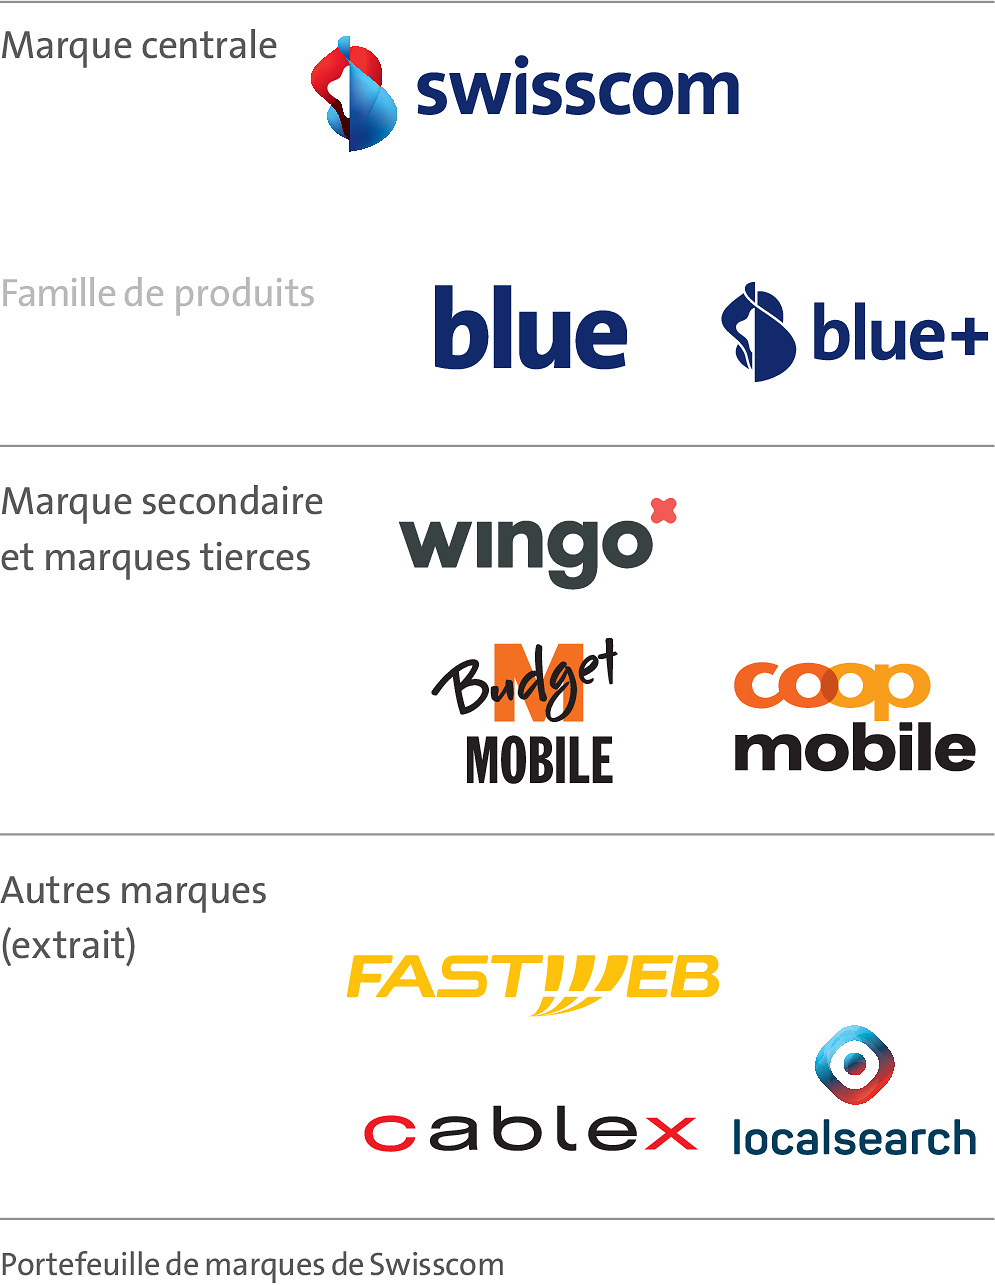 Le graphique montre le por­te­feuille de marques avec la marque principale Swisscom et sa famille de pro­duits blue et blue+. Wingo, Budget Mobile et Coop Mobile sont représentées en tant que marques secondaires et tierces. Fastweb, cablex et localsearch font partie de la catégorie Autres marques.